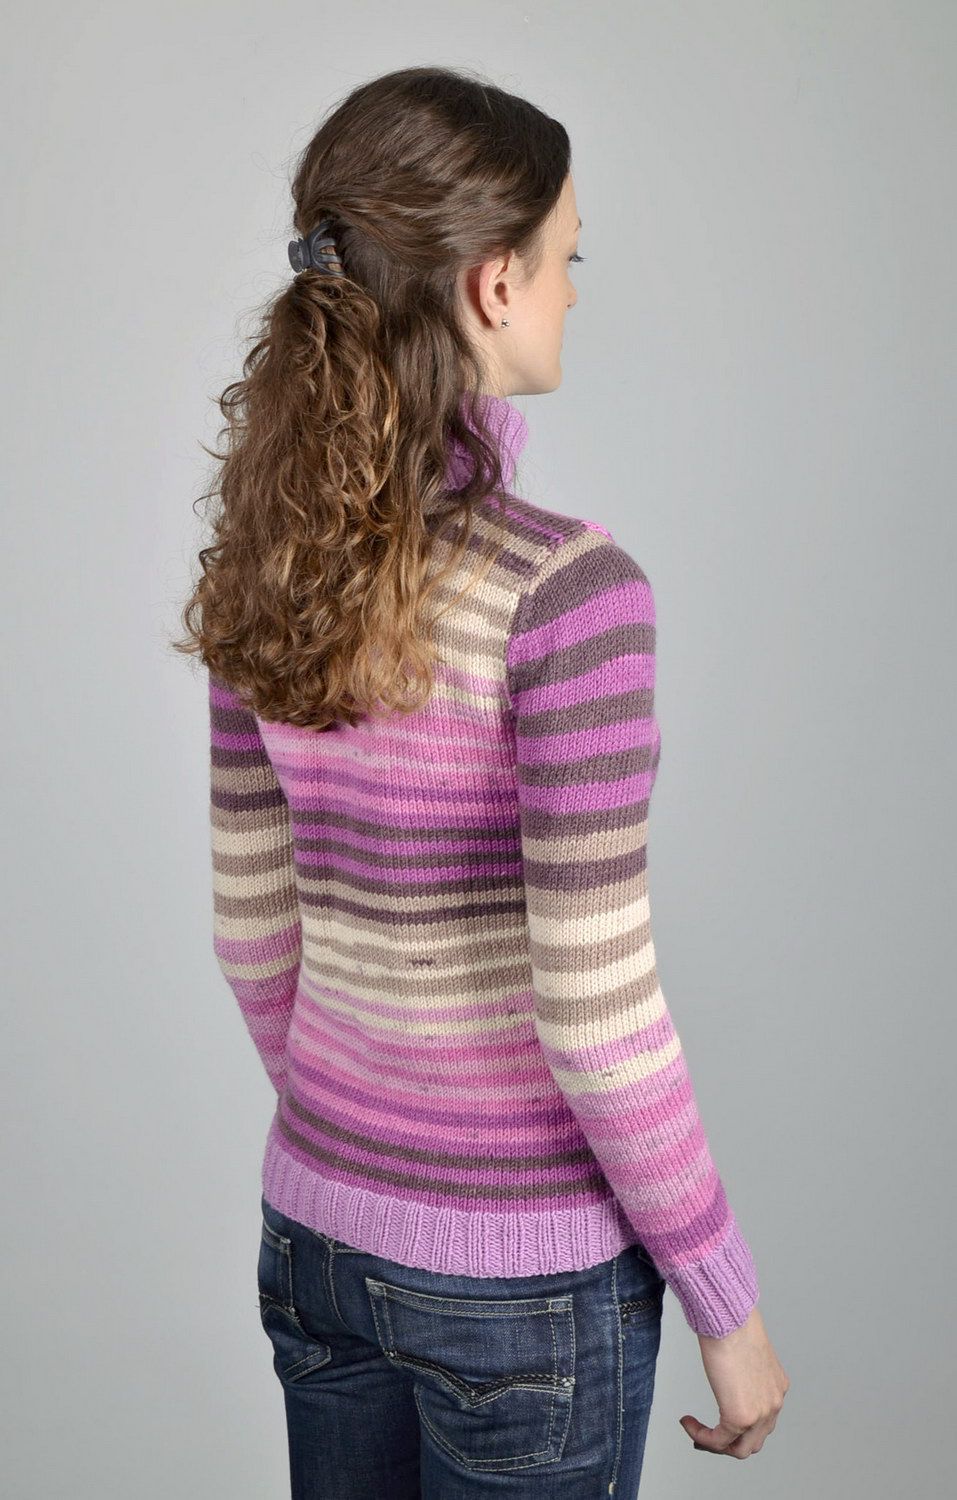 Шерстяной вязаный свитер в сиреневых тонах фото 2